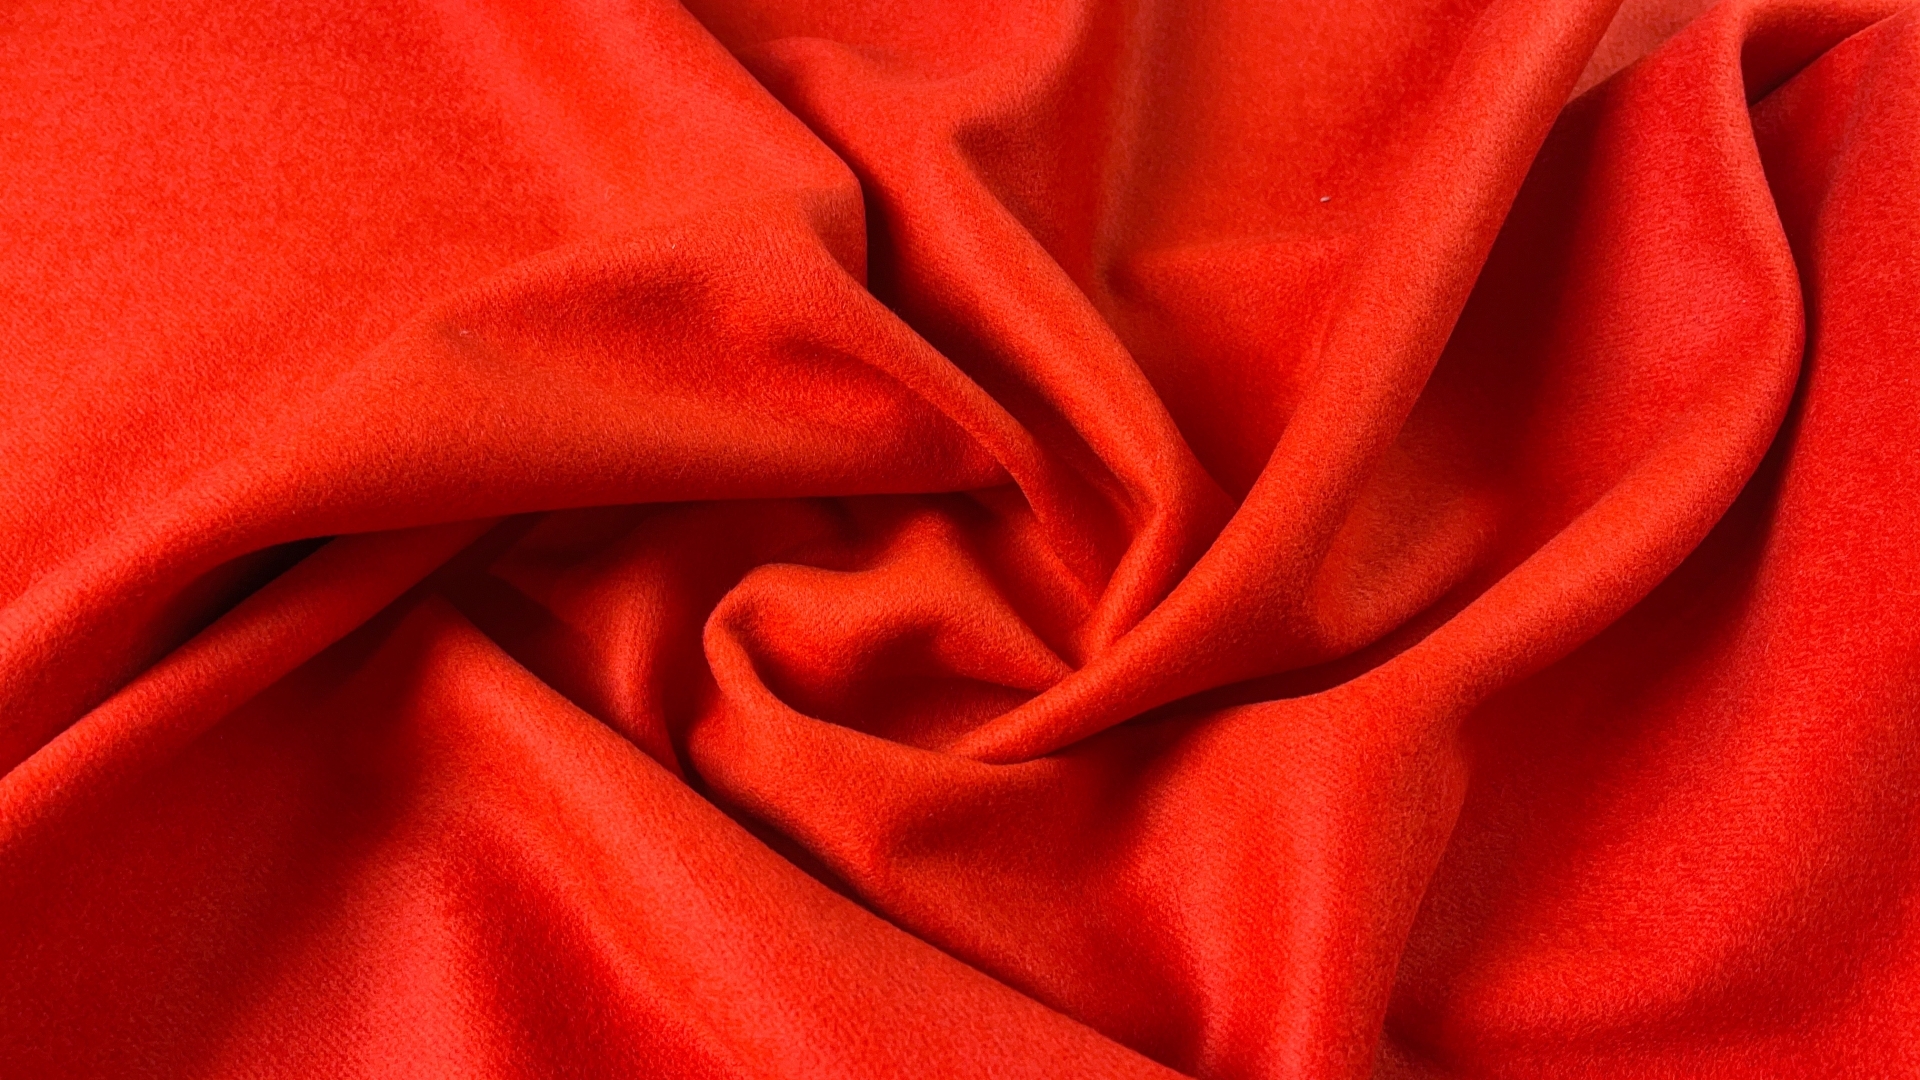 Пальтовая ткань насыщенного оранжевого оттенка. Полотно с мельчайшим ворсиком, едва заметным, имеет легкий отлив. Полотно довольно плотное, 800 гр м/п, отлично будет смотреться в прямой классике и пальто-рубашке.